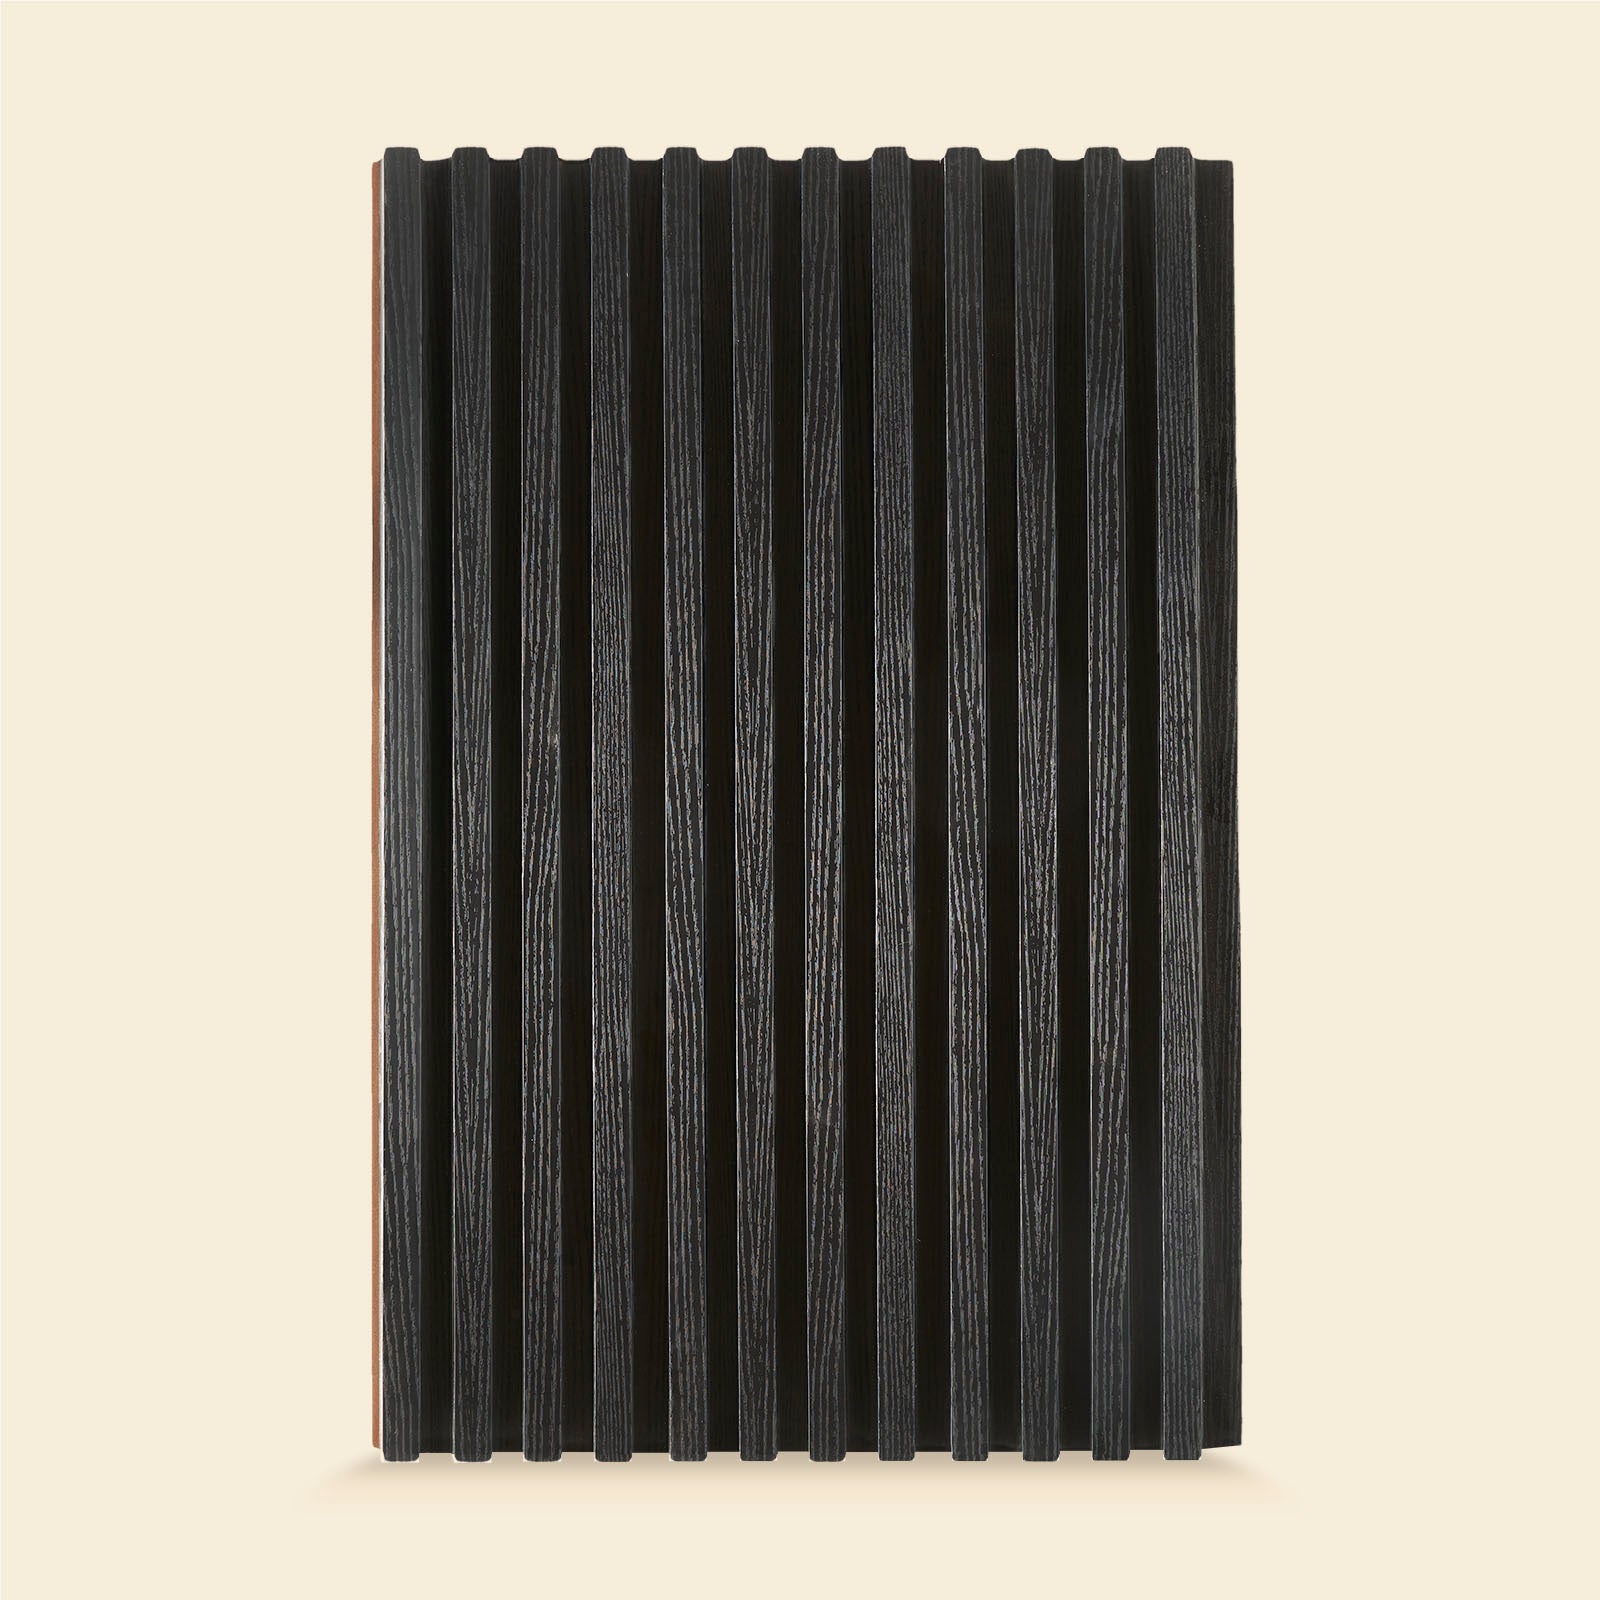 premier fluted panel black colour